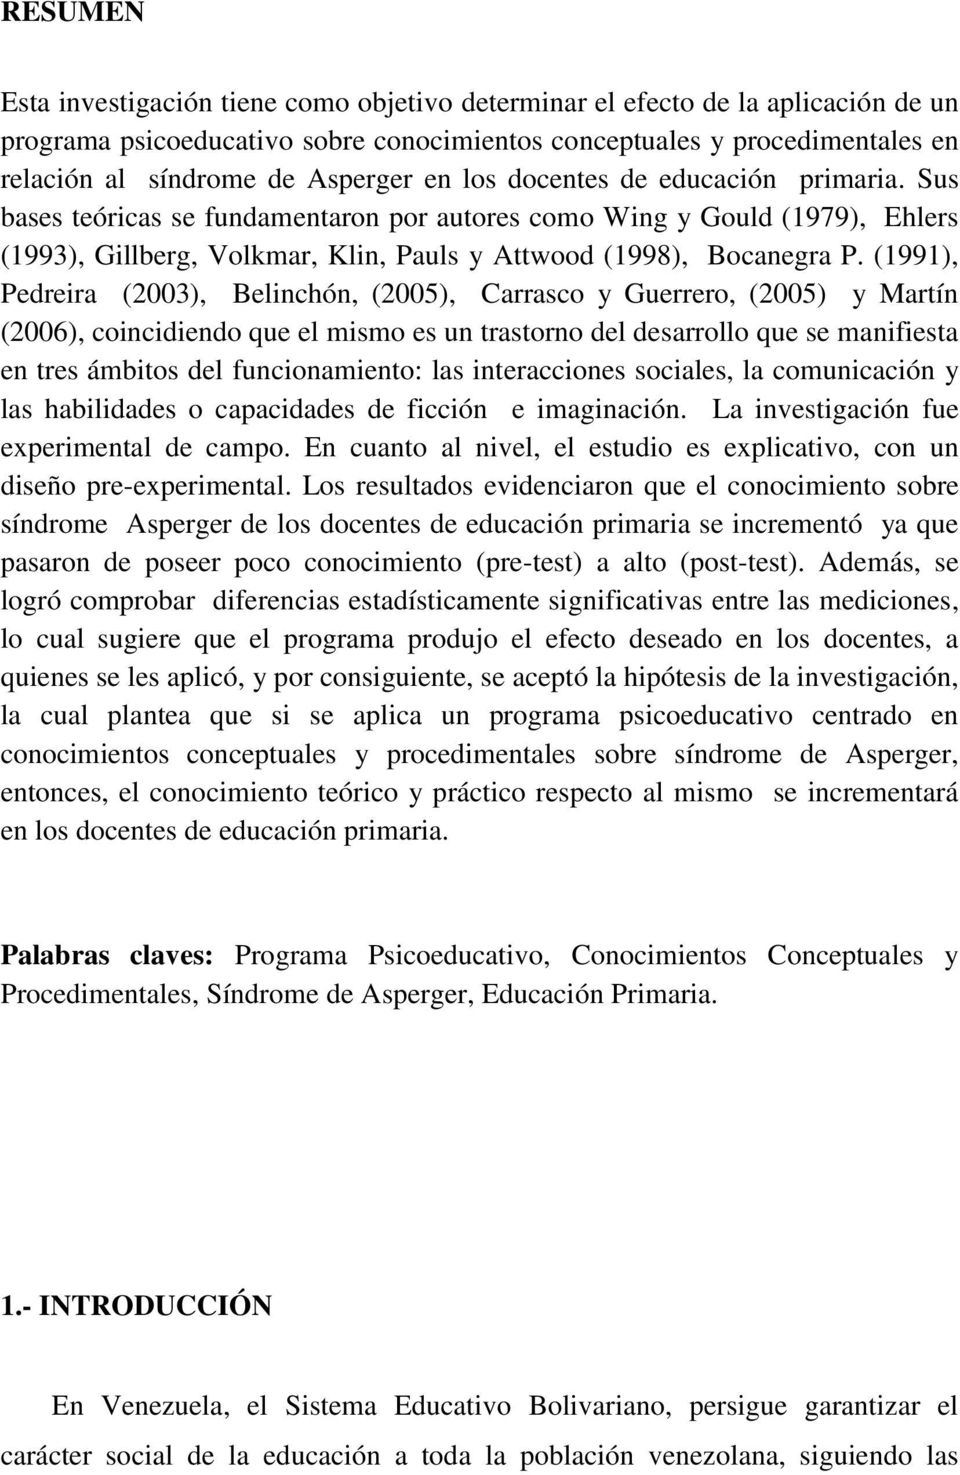 (1991), Pedreira (2003), Belinchón, (2005), Carrasco y Guerrero, (2005) y Martín (2006), coincidiendo que el mismo es un trastorno del desarrollo que se manifiesta en tres ámbitos del funcionamiento: